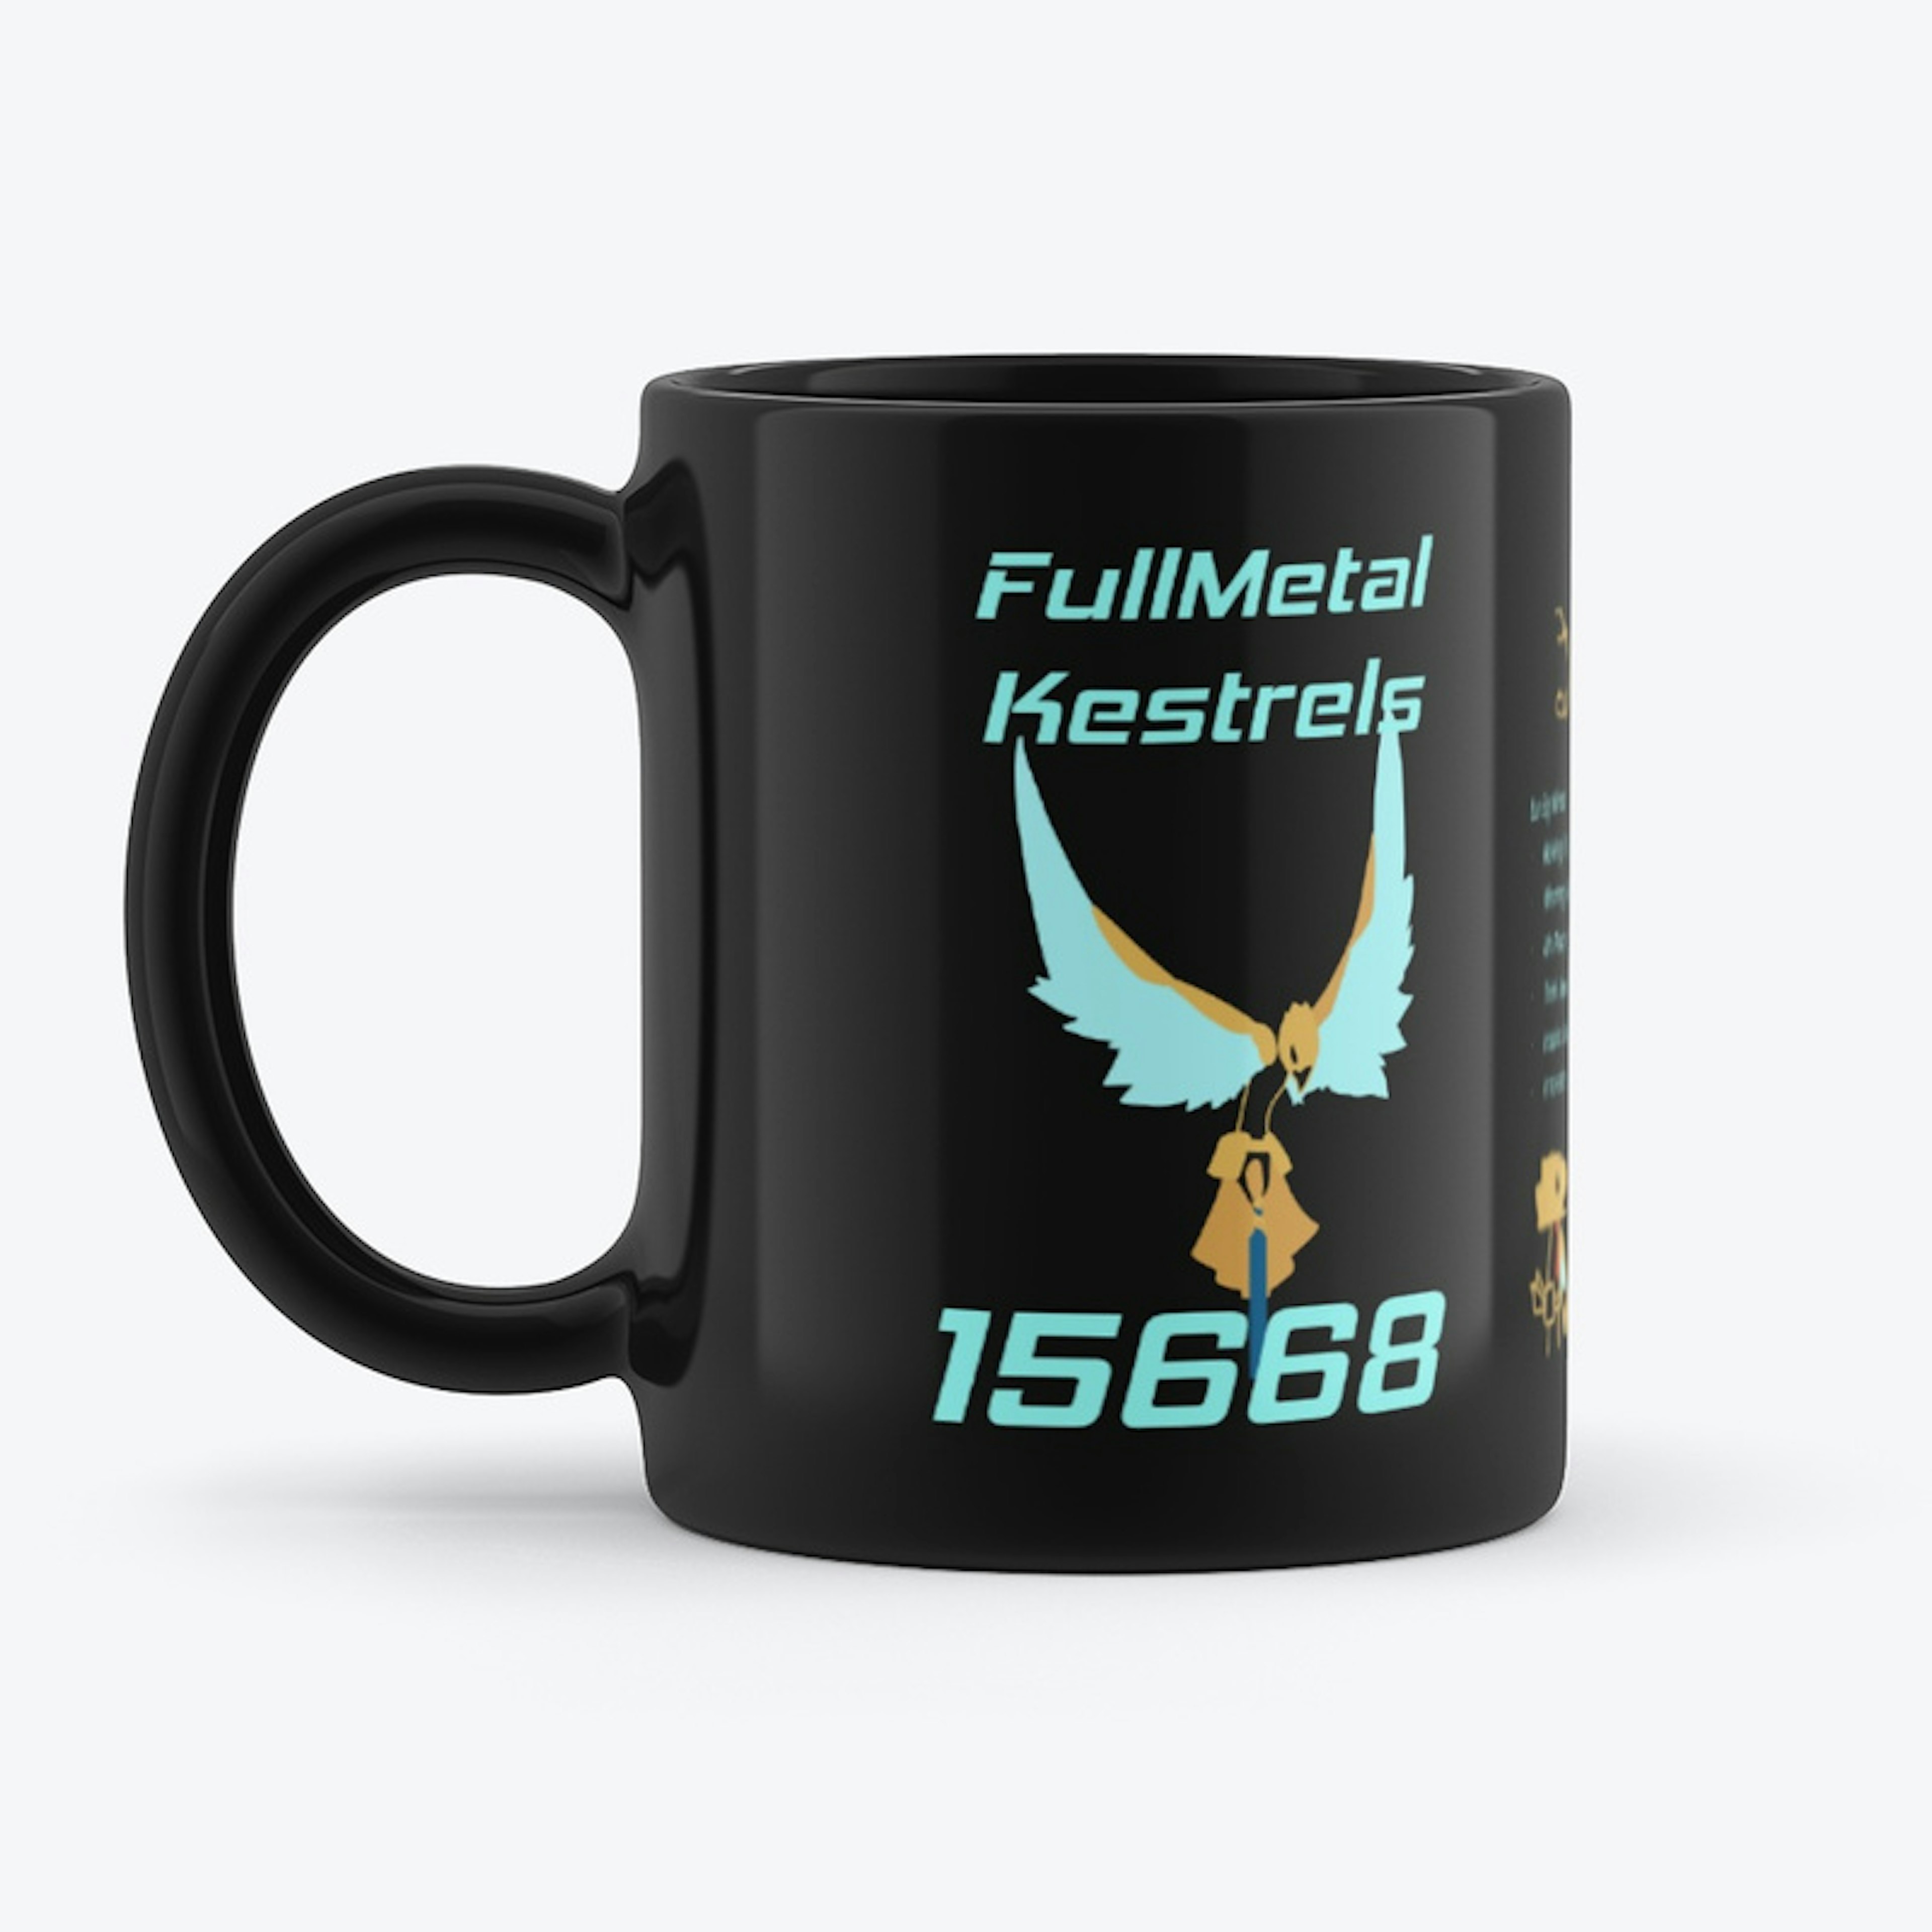 FullMetal Kestrel 15668 Mugs